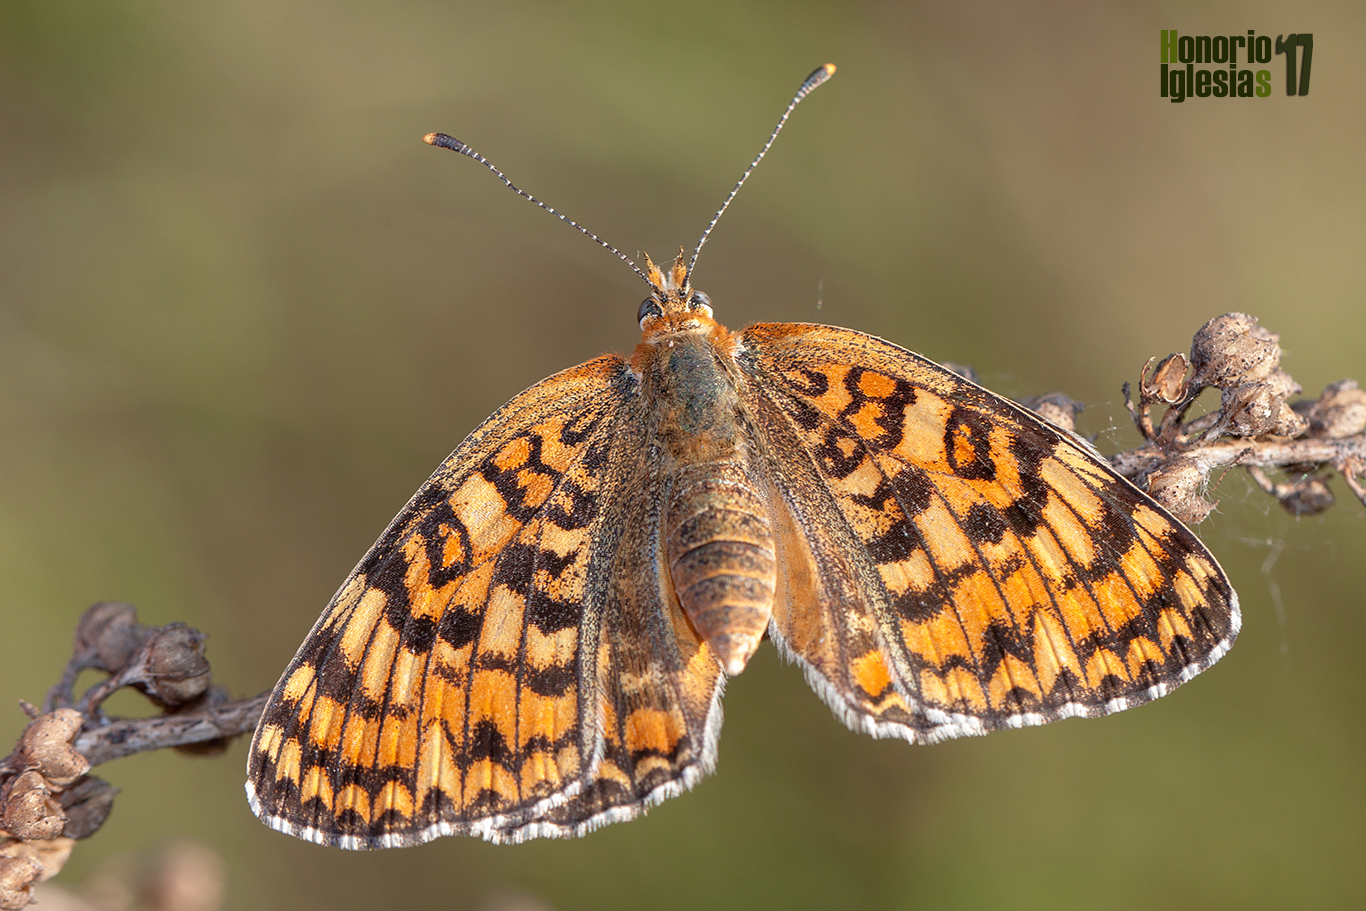 Hembra de mariposa doncella mayor (Melitaea phoebe) en posición defensiva mostrando su abdomen